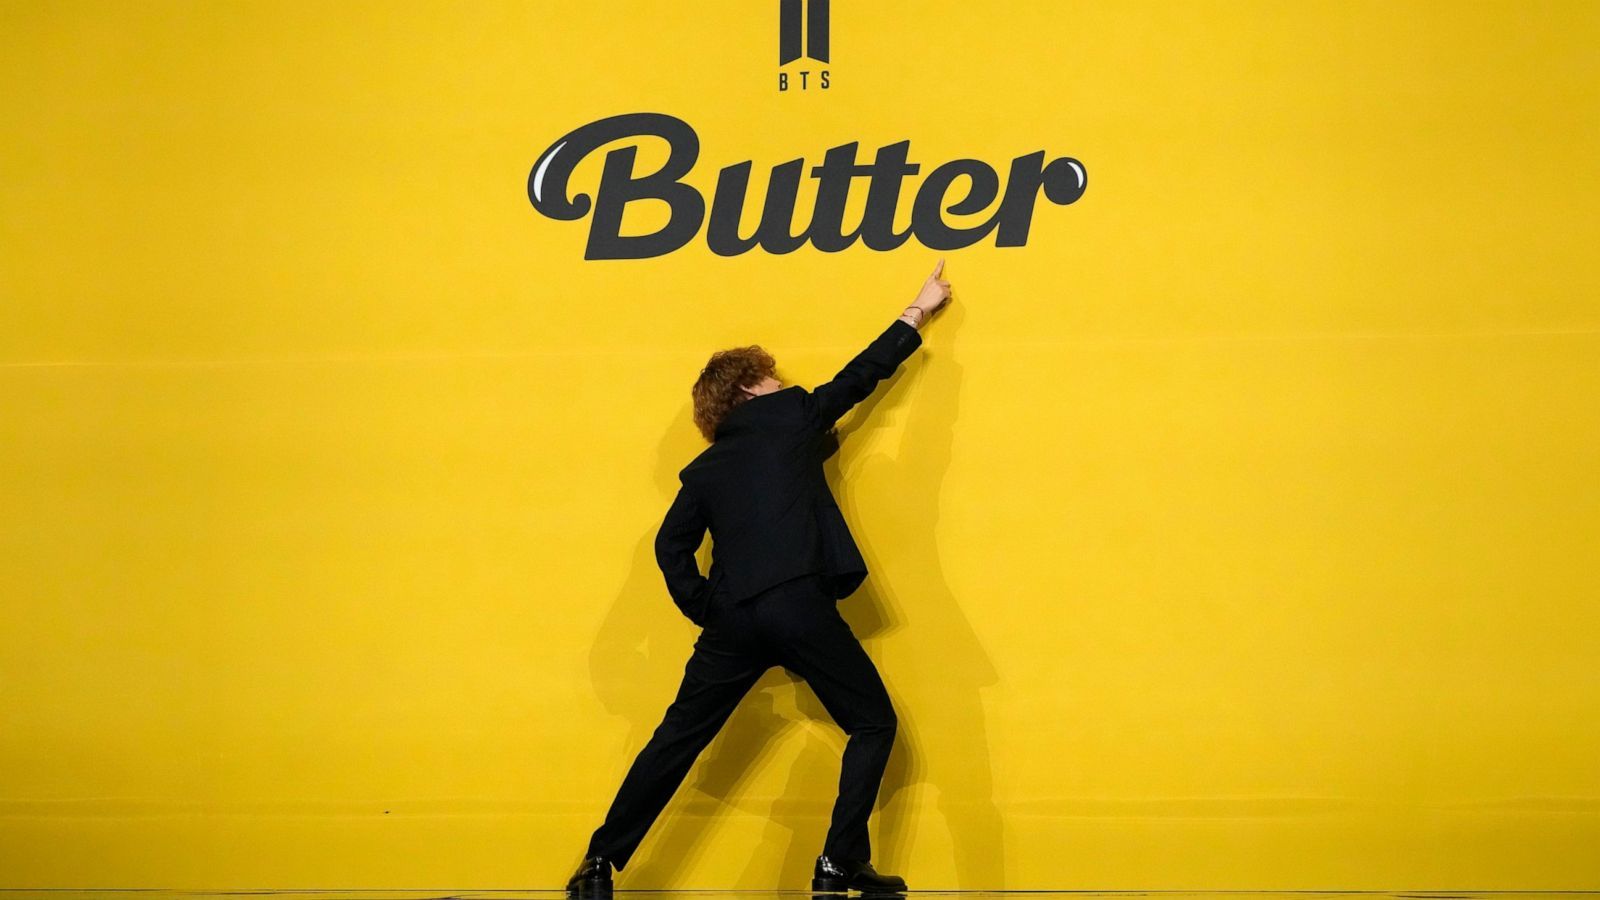 BTS Butter  Wallpaper  Bts wallpaper Bts wallpaper lyrics Bts  aesthetic wallpaper for phone